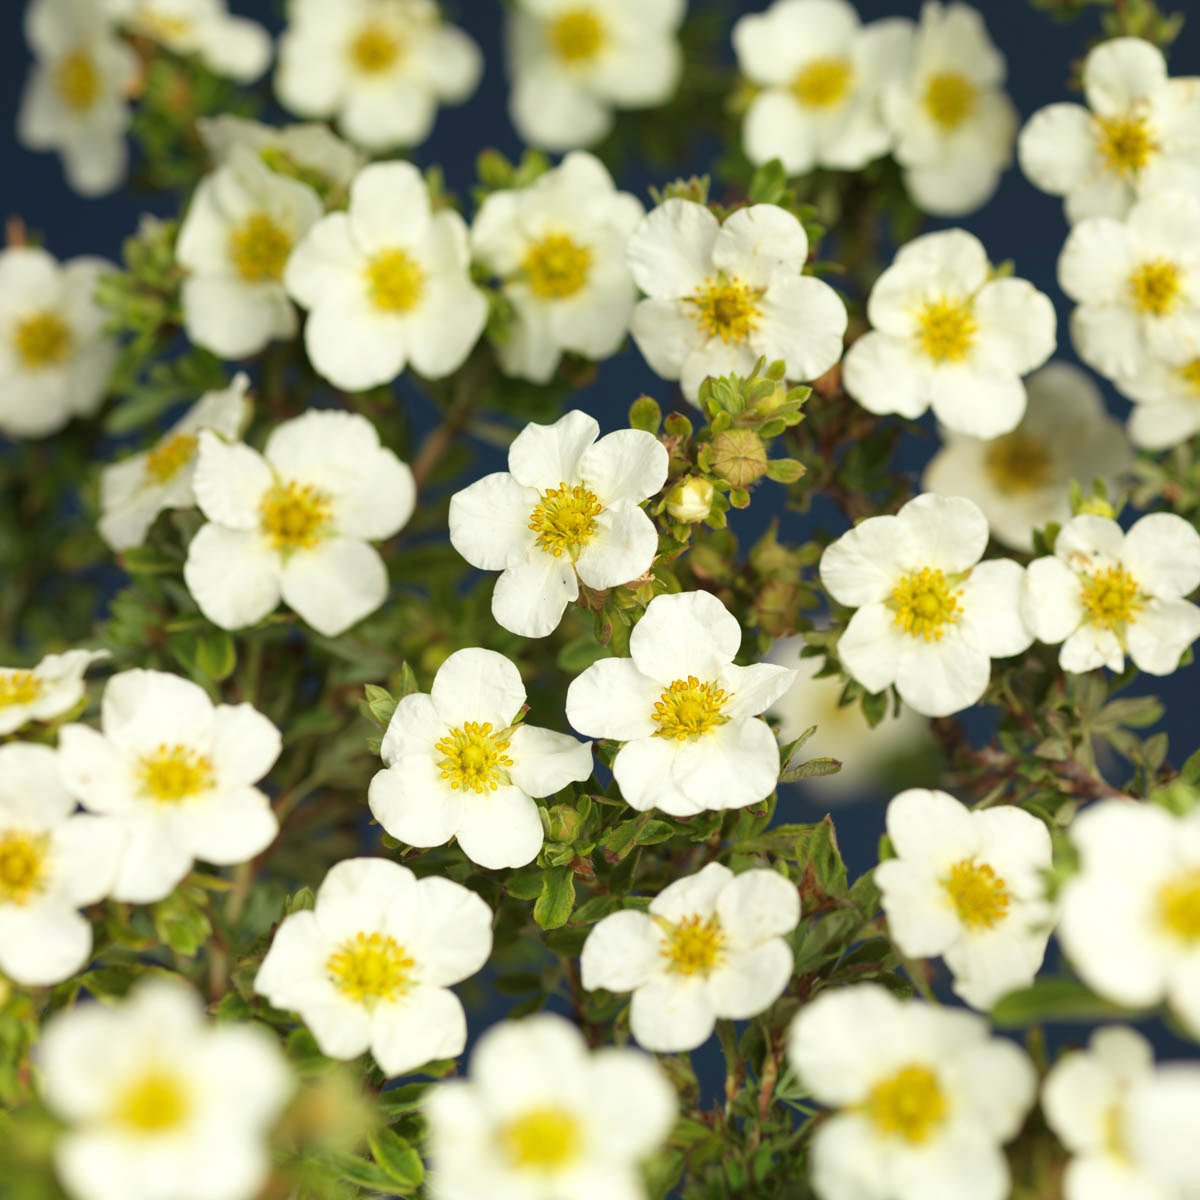 Buskmure 'McKay's White' blomstrer med store hvite blomster fra juli til oktober